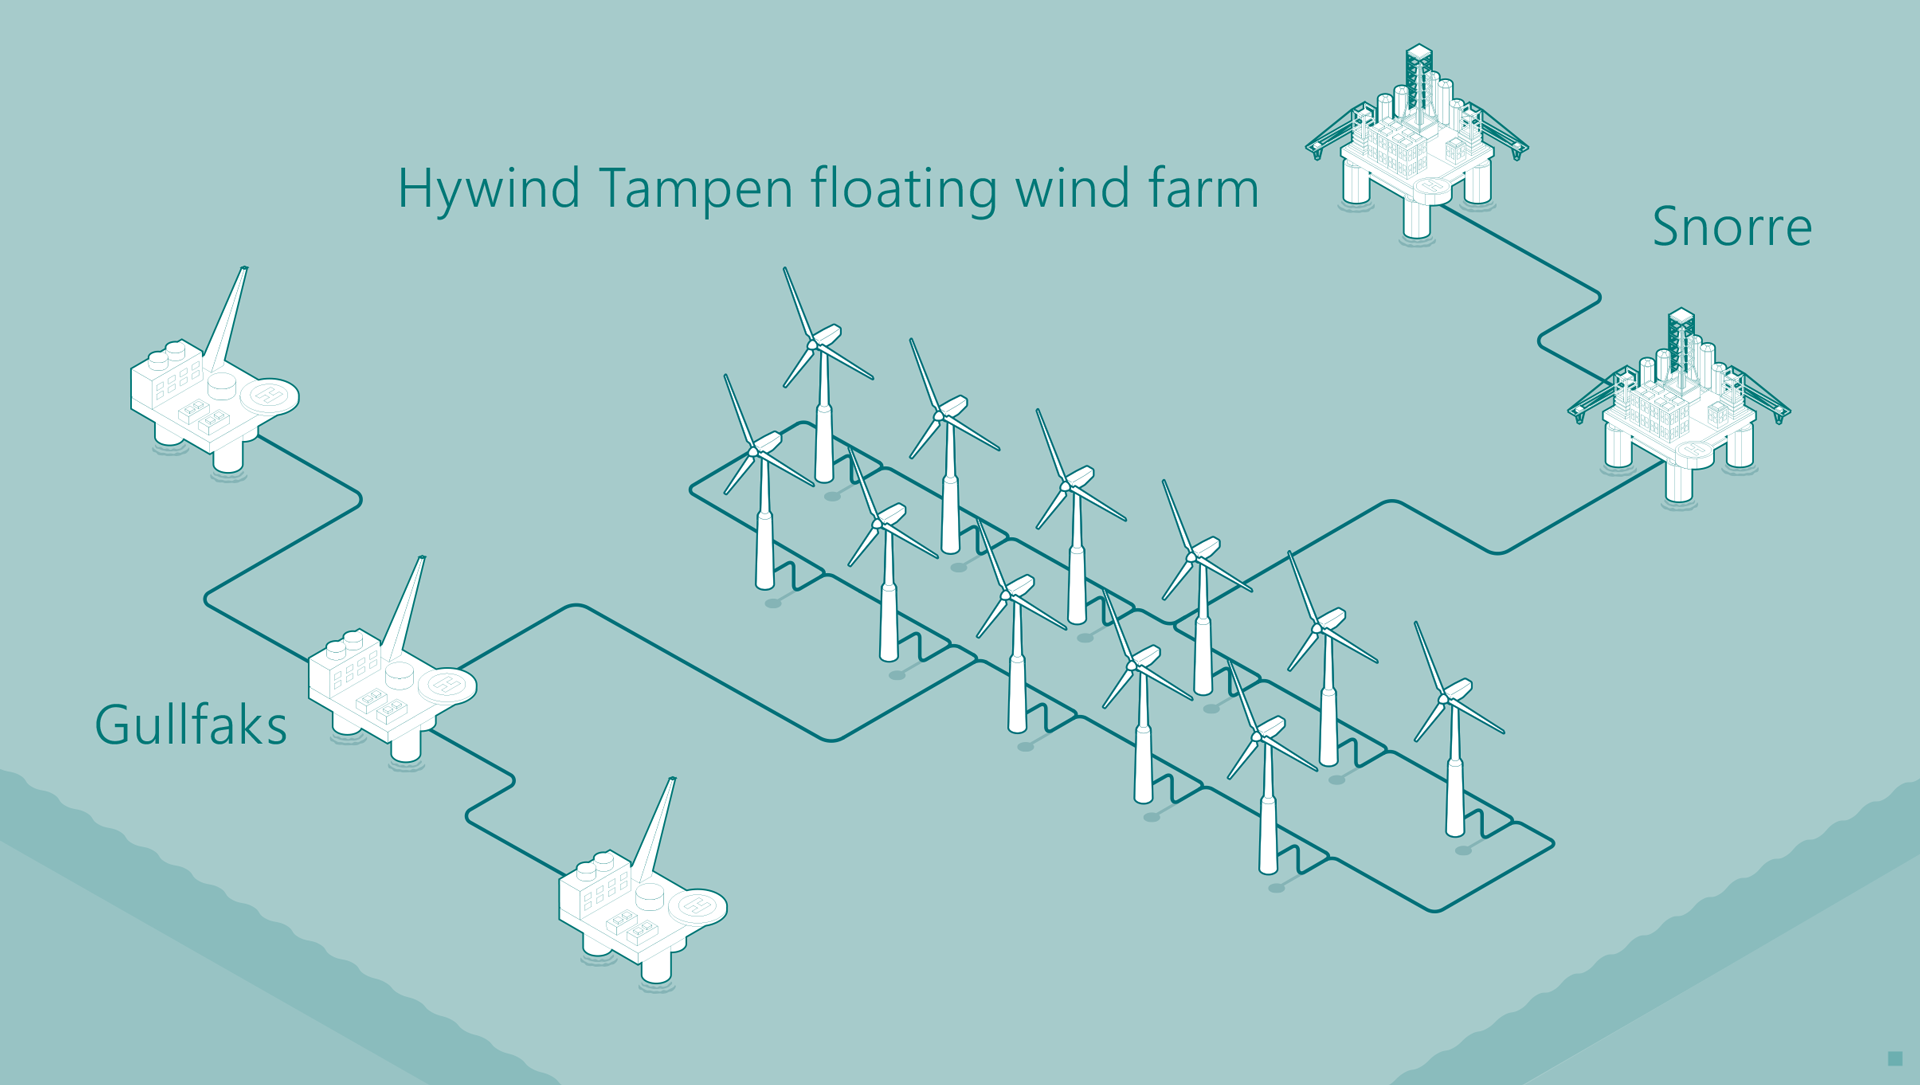 En illustrasjon av vindkraftprosjektet Hywind Tampen, som illustrerer hvordan de flytende vindmøllene skal gi strøm til feltene Gullfaks og Snorre